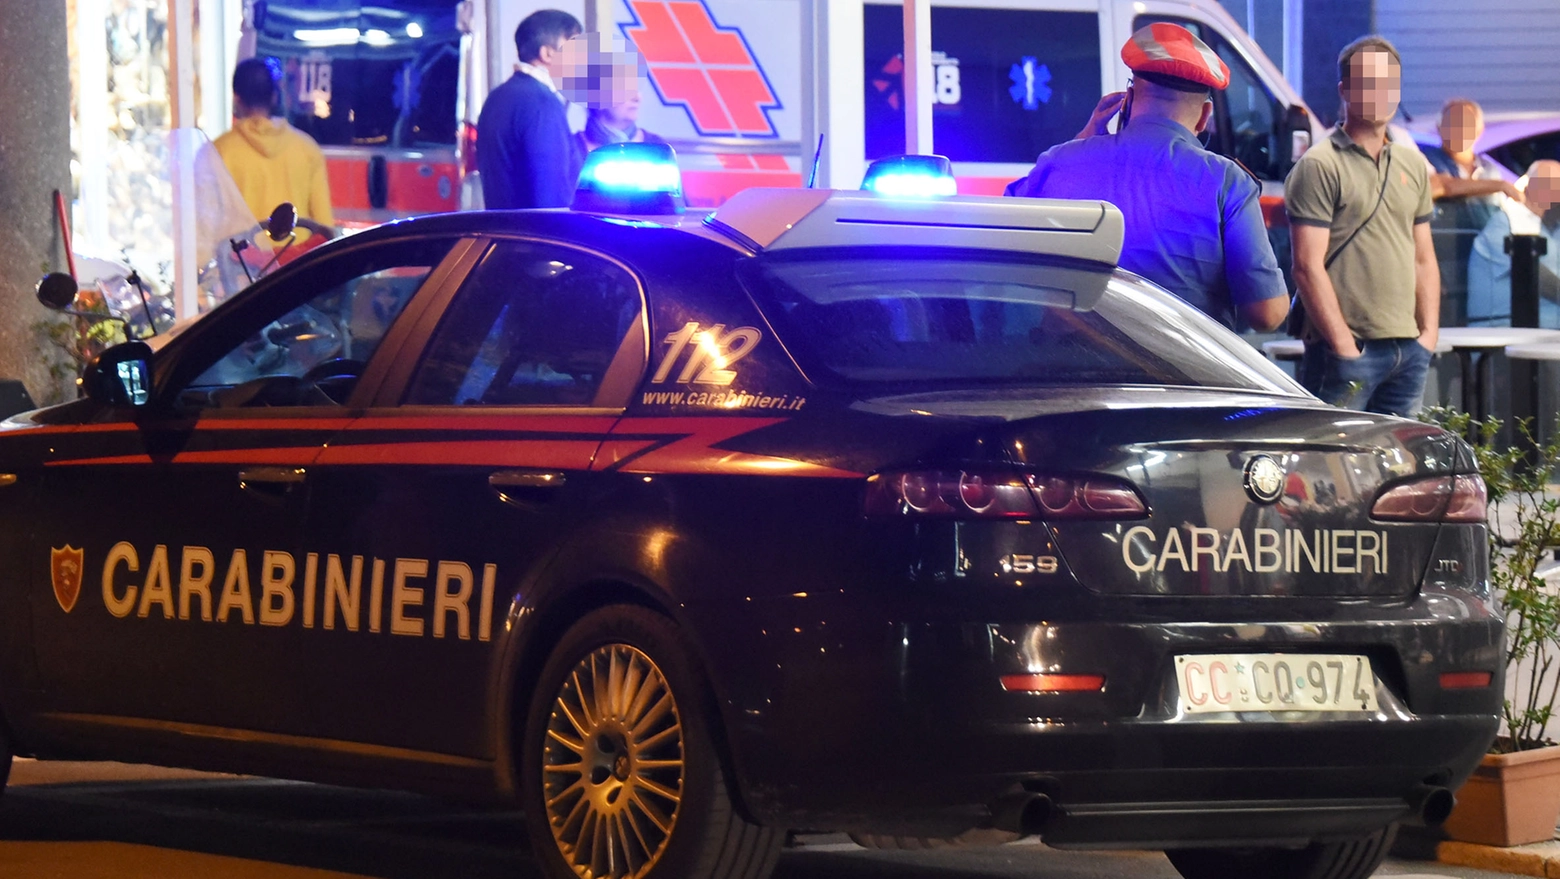 Il ventenne è stato arrestato dai carabinieri della compagnia di Riccione (foto d'archivio Migliorini)